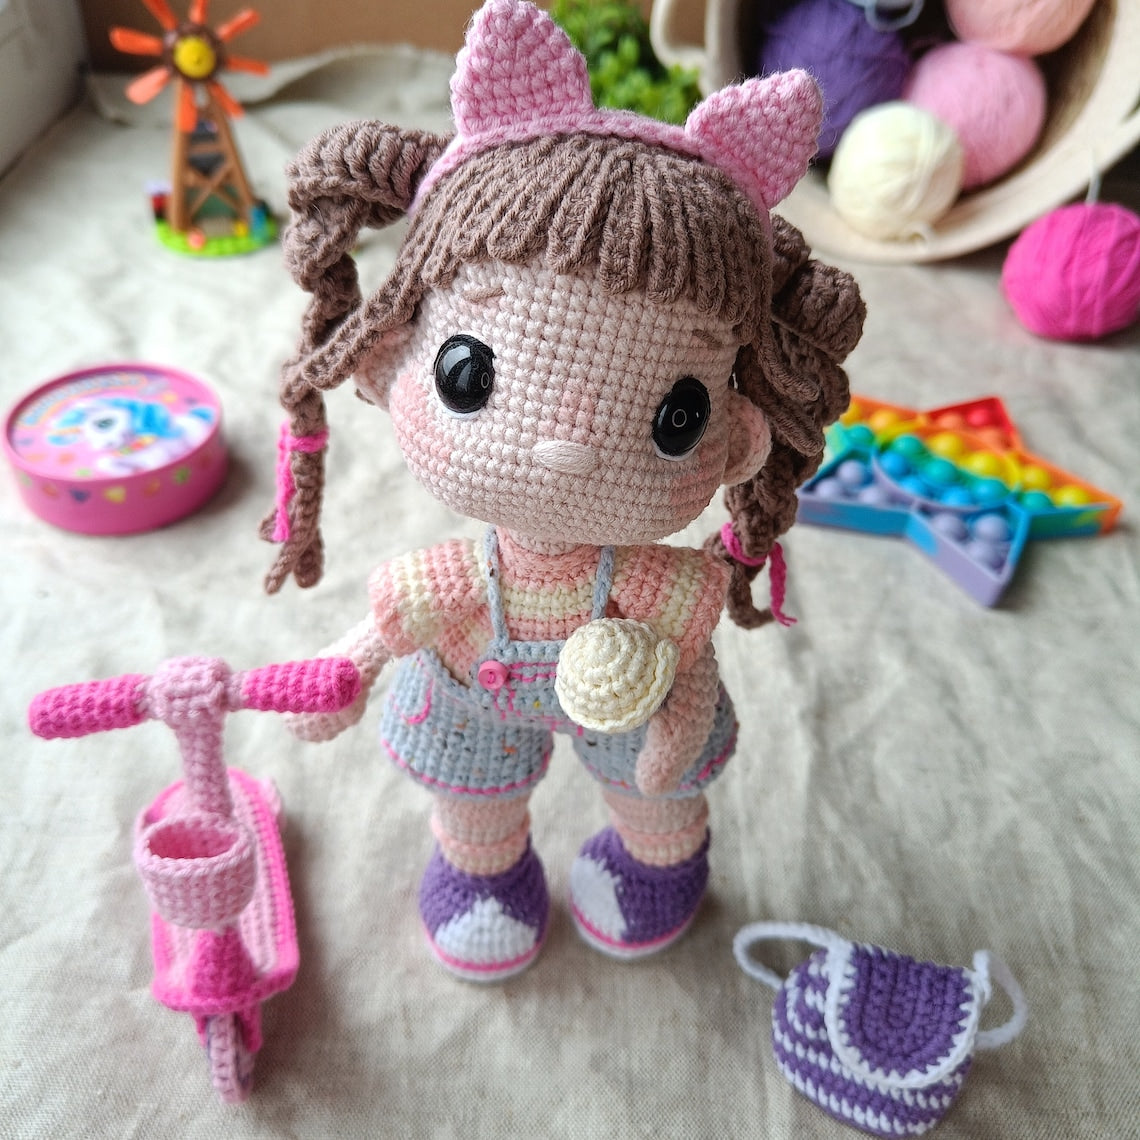 Crochet Amigurumi Pattern: Baby Doll Scooter Backpack Lollipop